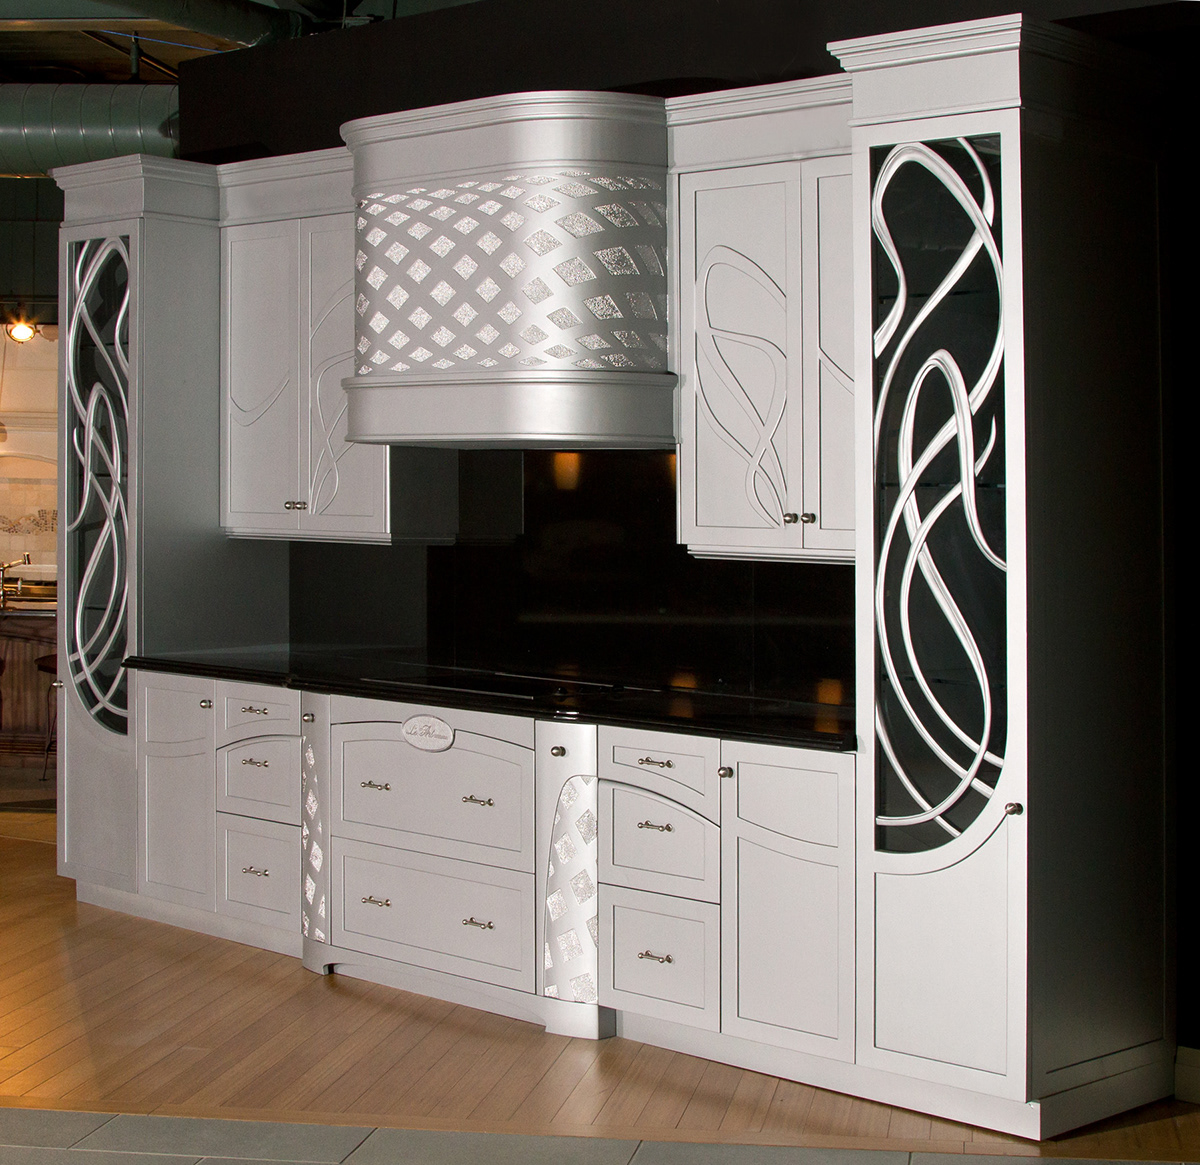 custom kitchen Art Nouveau Kitchen modern kitchen EXCLUSIVE DESIGN